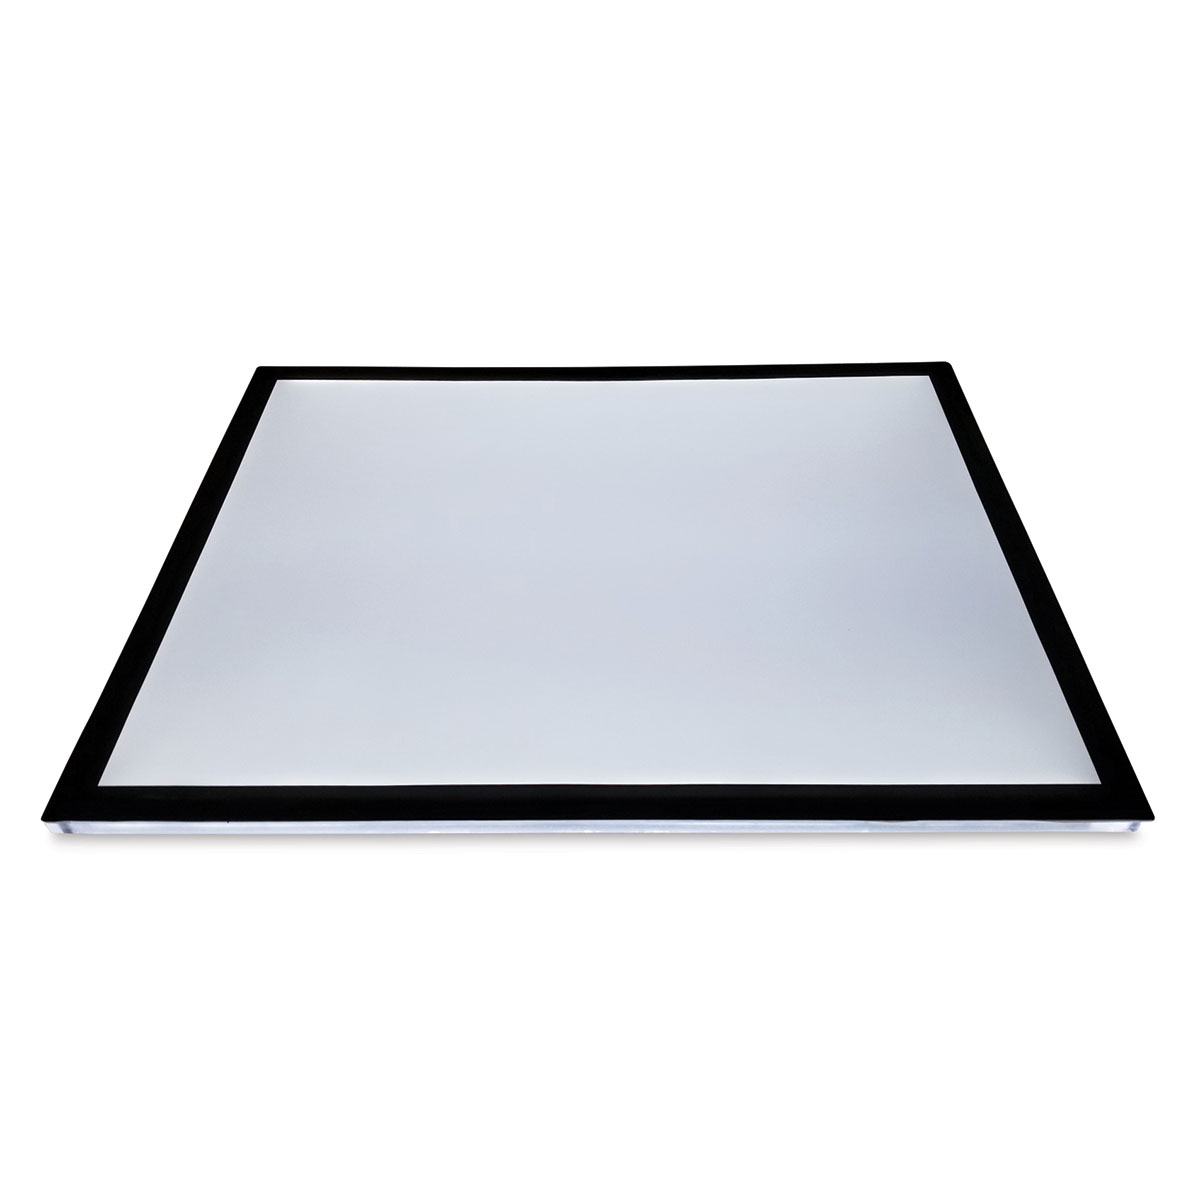 Gagne Porta-Trace LED Light Table